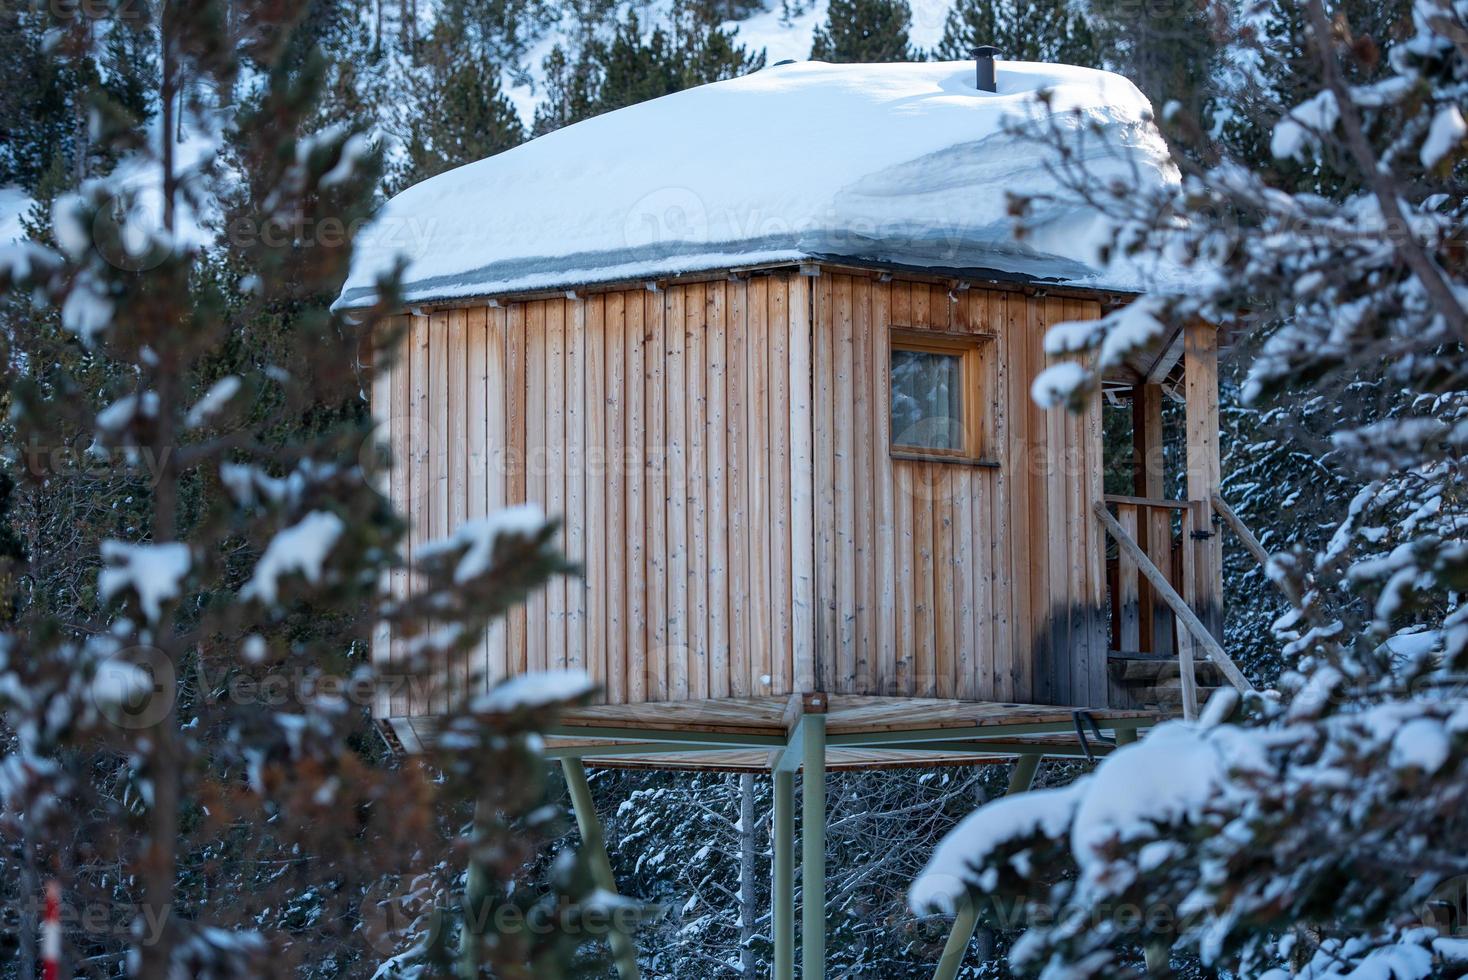 cabana rústica nas montanhas dos pireneus no inerno de 2022 foto